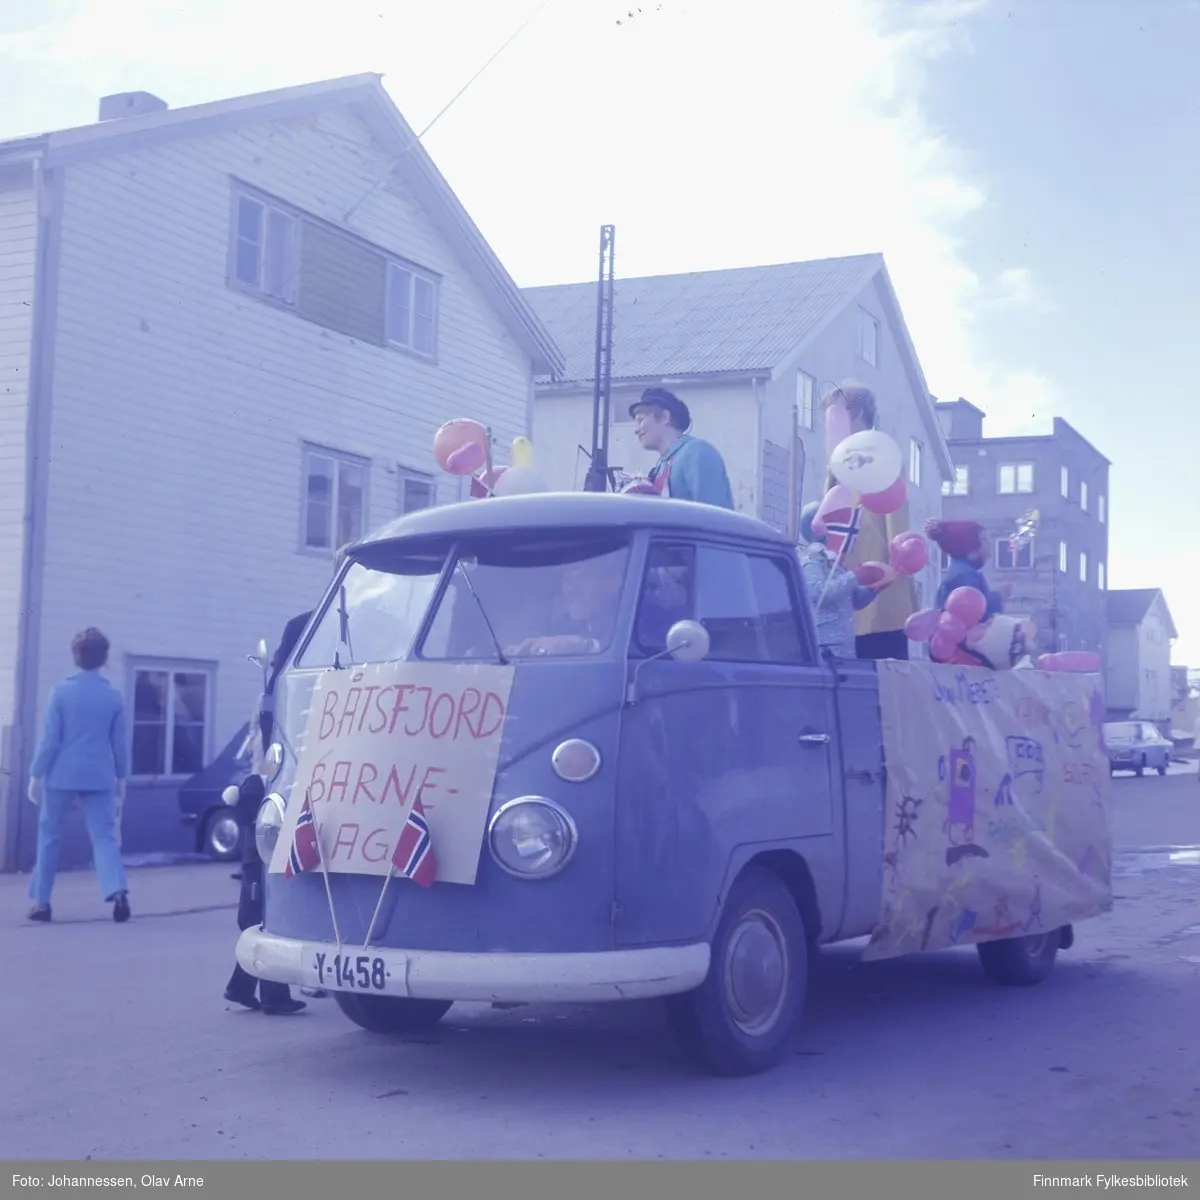 17. mai tog i Båtsfjord

Båtsfjord barnehage markerer i Volkswagen Transporter med skiltnummer: Y-1458

Sjåfør er Jakob Jakobsen, med Audhild Jakobsen (født Aandal) på lasteplanet, med sort russelue.

Foto trolig tatt på 1960/70-tallet